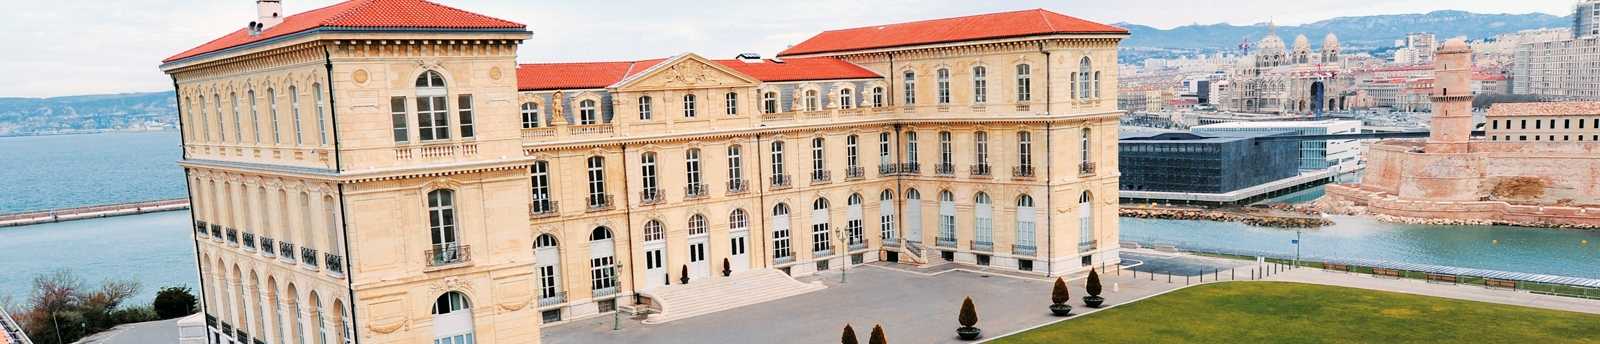 Pharo Palace, Marseille, France